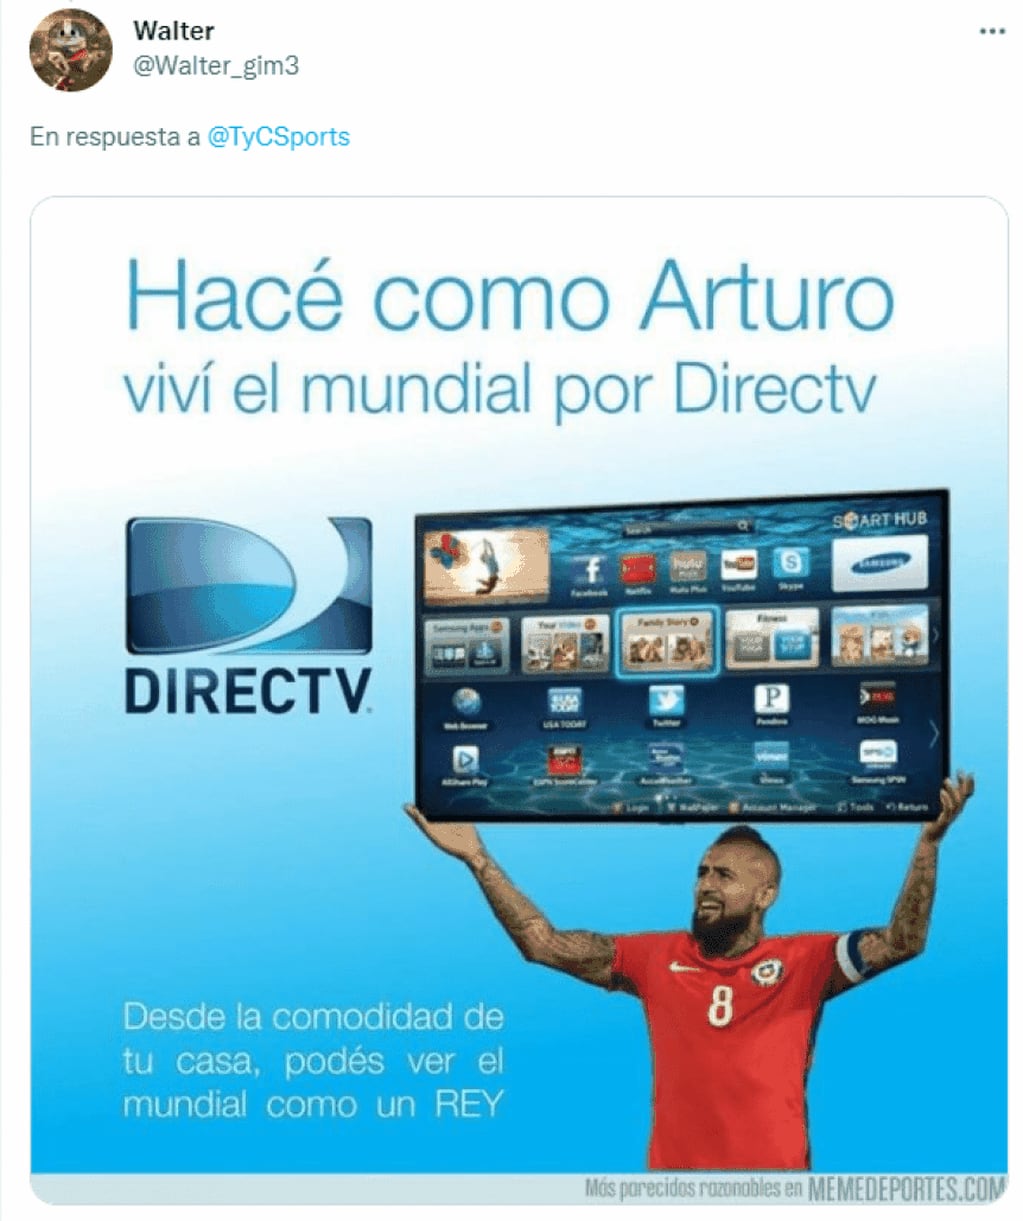 La utilización de una publicidad de una empresa de cable, para hacer referencia a que Chile mirará el Mundial por televisión.